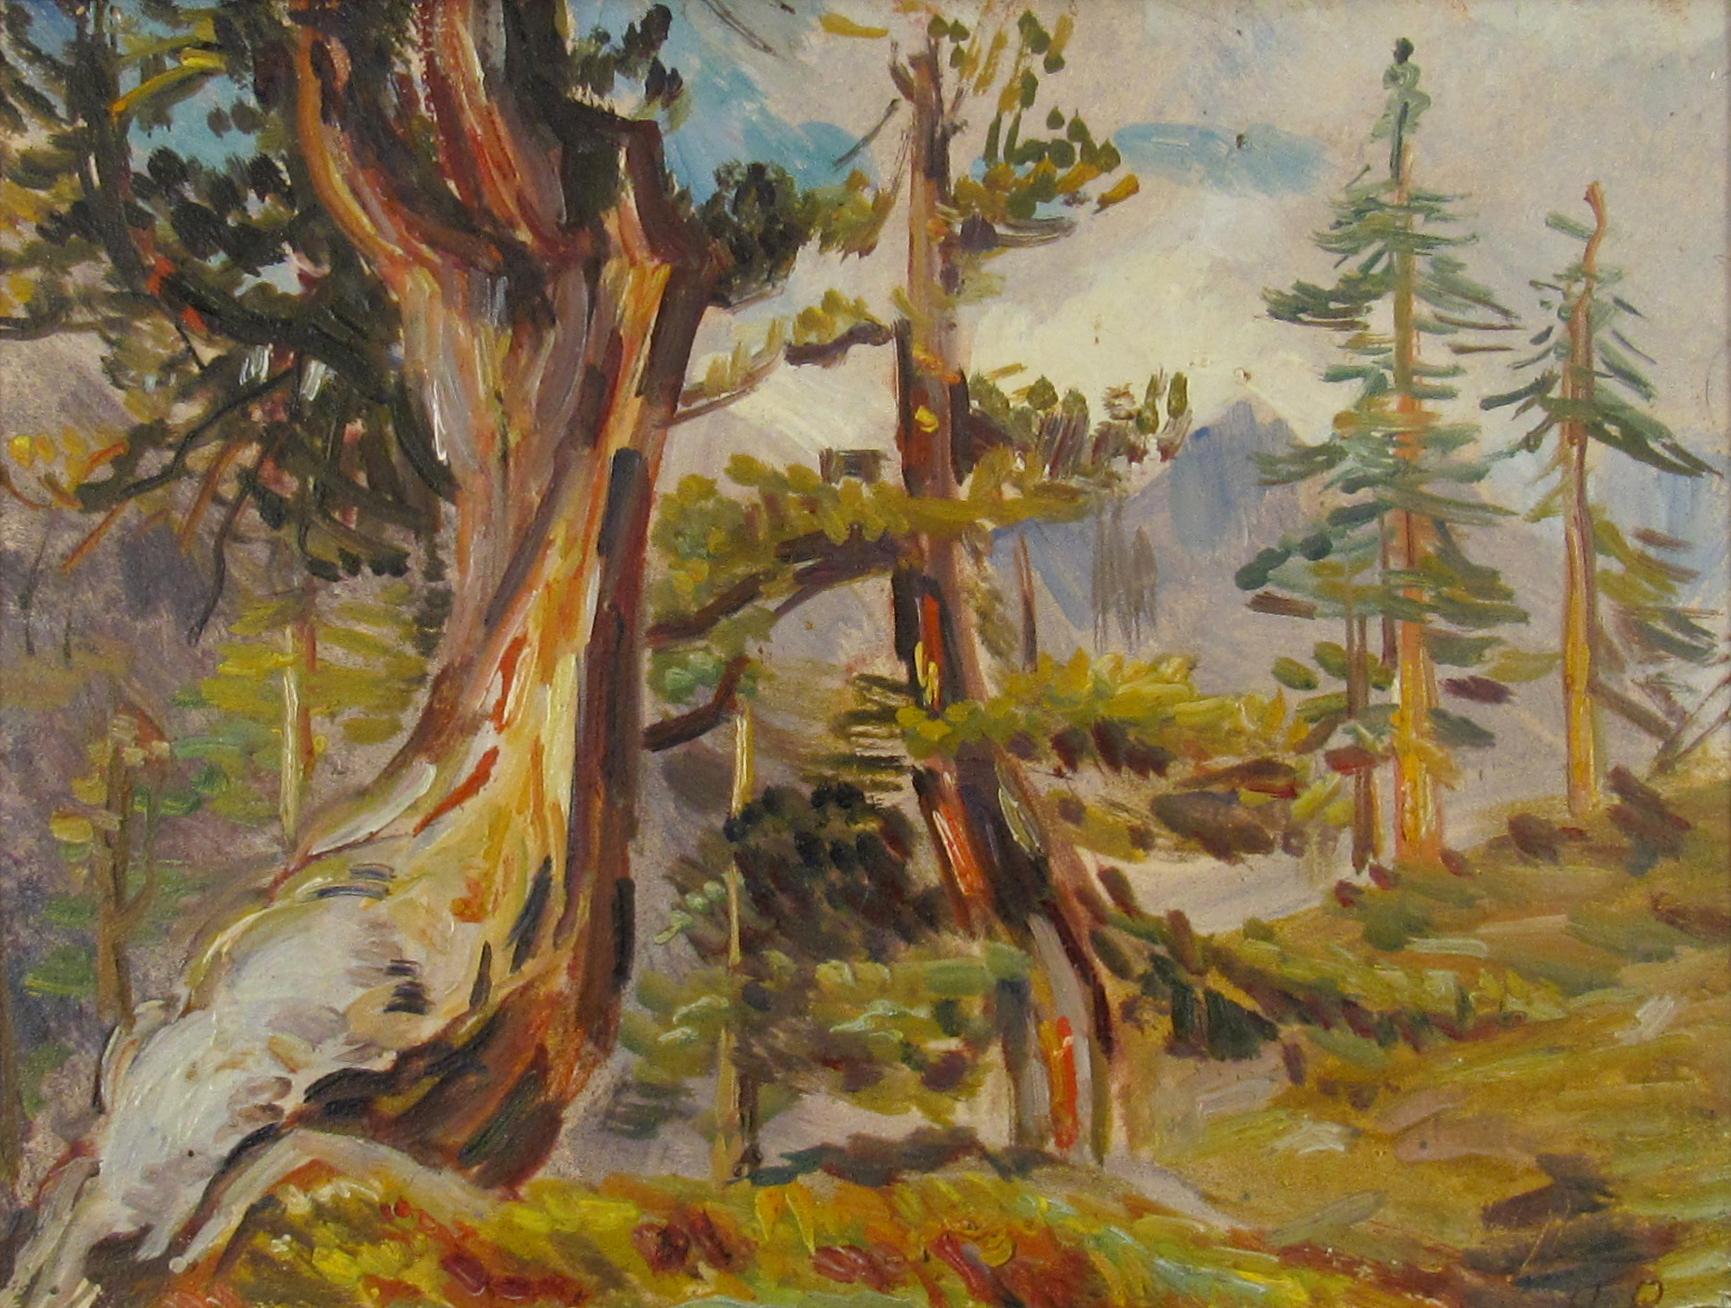 Hanni Bay ( Suisse, 1885 - 1978), Forêt alpine, peinture à l'huile sur carton - Painting de Hanny Bay